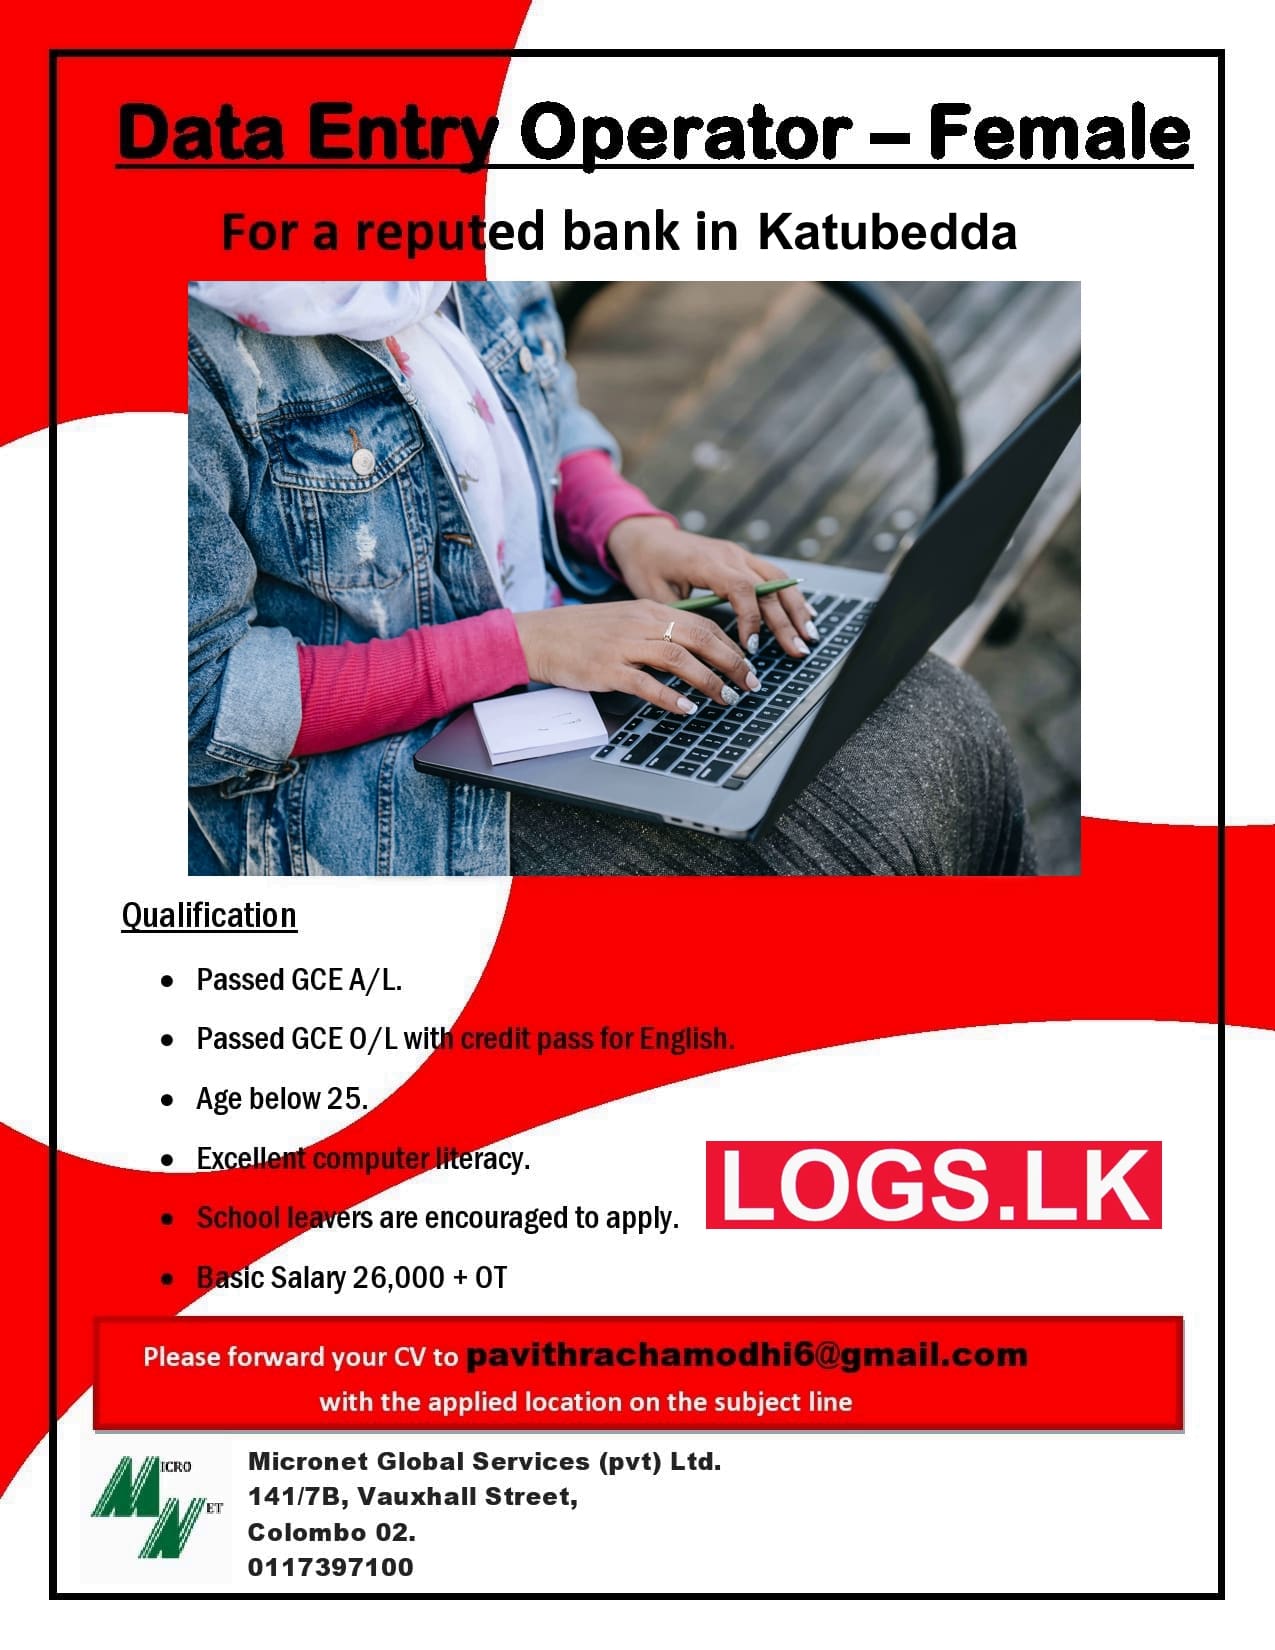 Female Bank Data Entry Operator Job Vacancy in Katubedda Jobs Vacancies